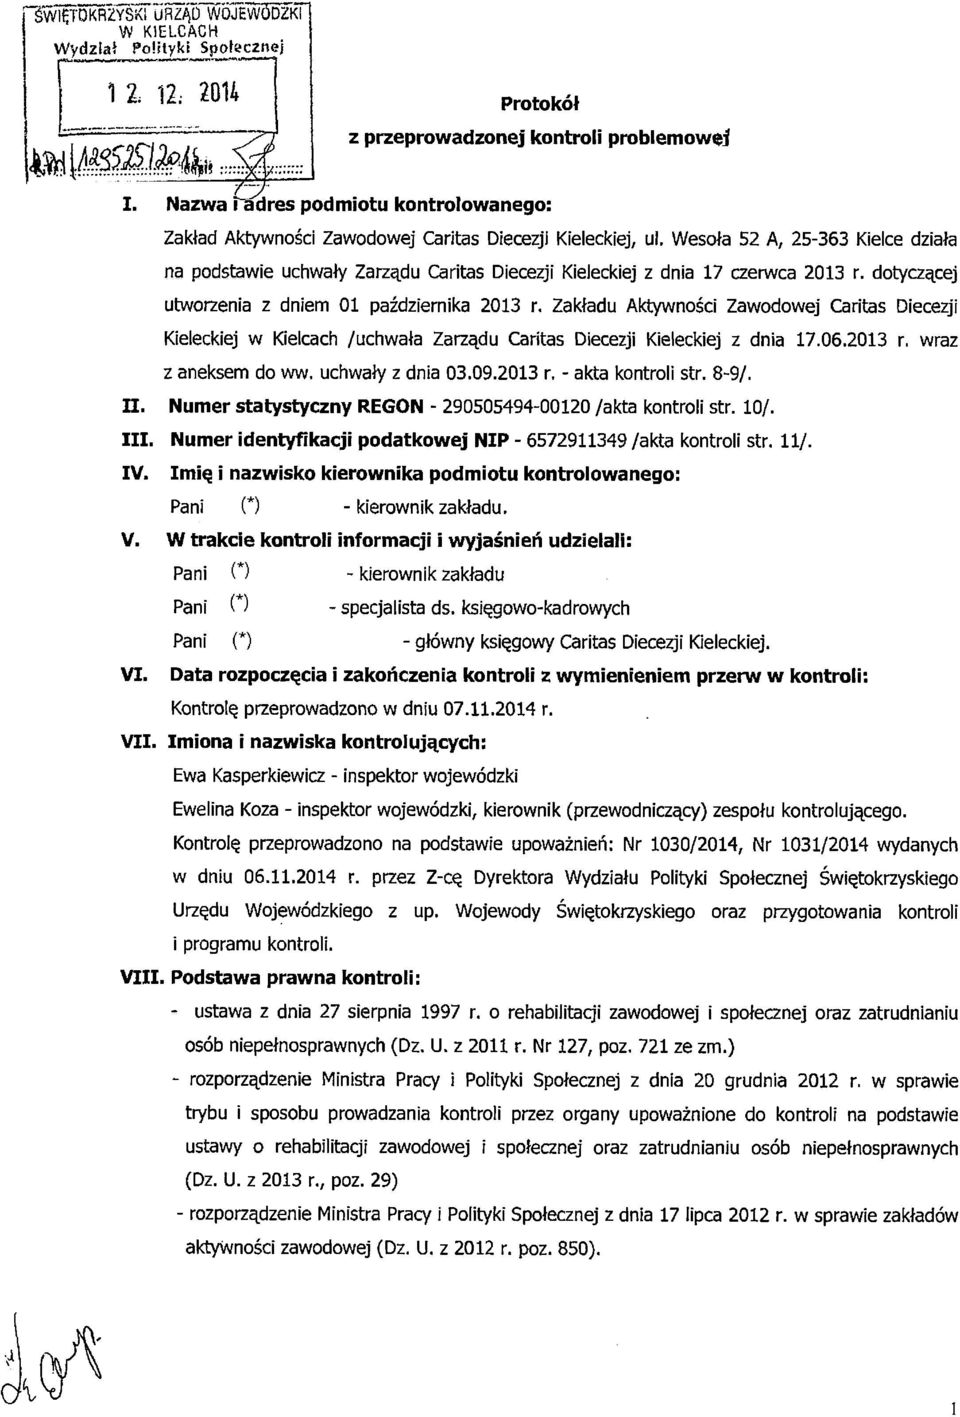 Wesoła 52 A, 25-363 Kielce działa na podstawie uchwały Zarządu Caritas Diecezji Kieleckiej z dnia 17 czerwca 2013 r. dotyczącej utworzenia z dniem 01 października 2013 r.